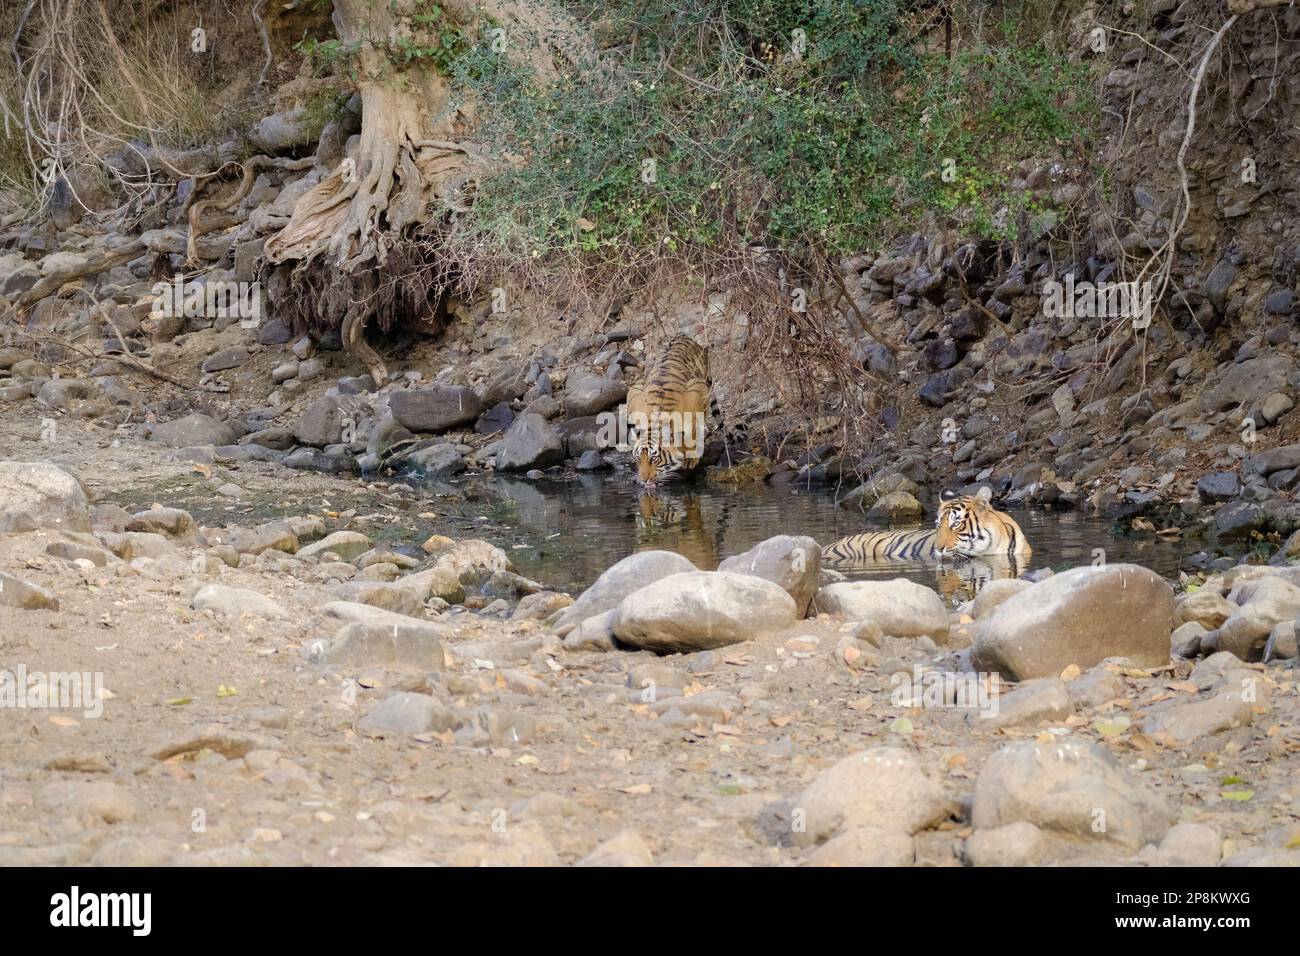 2 Tigerjunge, Panthera Tigris, im Wasser. 1 Junges trinken, das andere Tier entspannt sich im Wasser. Ranthambore-Nationalpark, Rajasthan, Indien Stockfoto